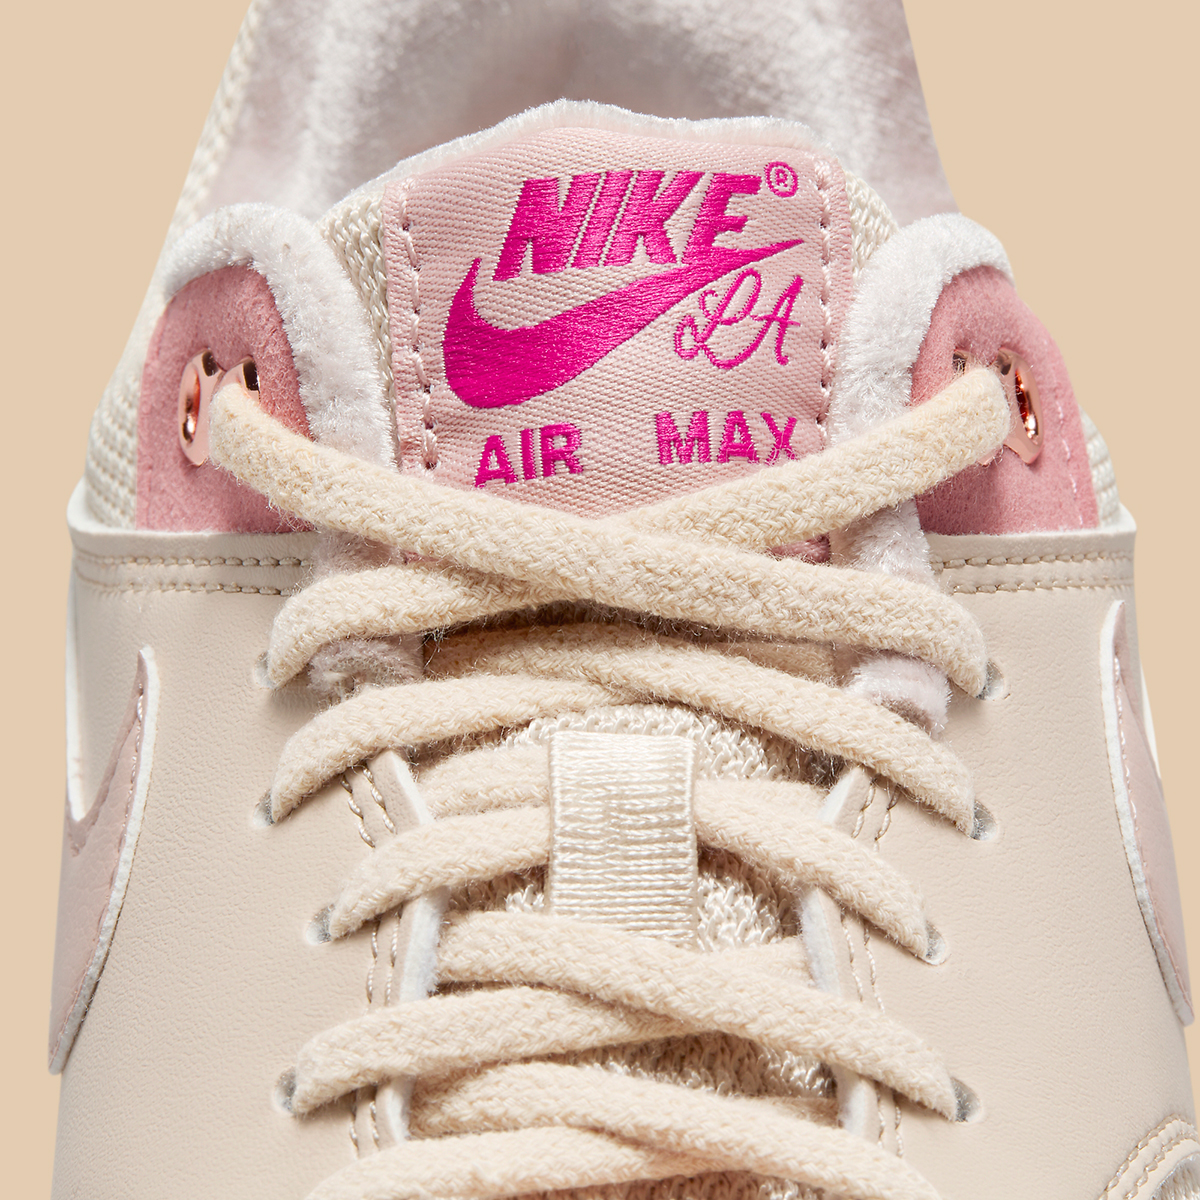 Nike Air Max 1 Serena Williams Design Crew Fn6941 200 10